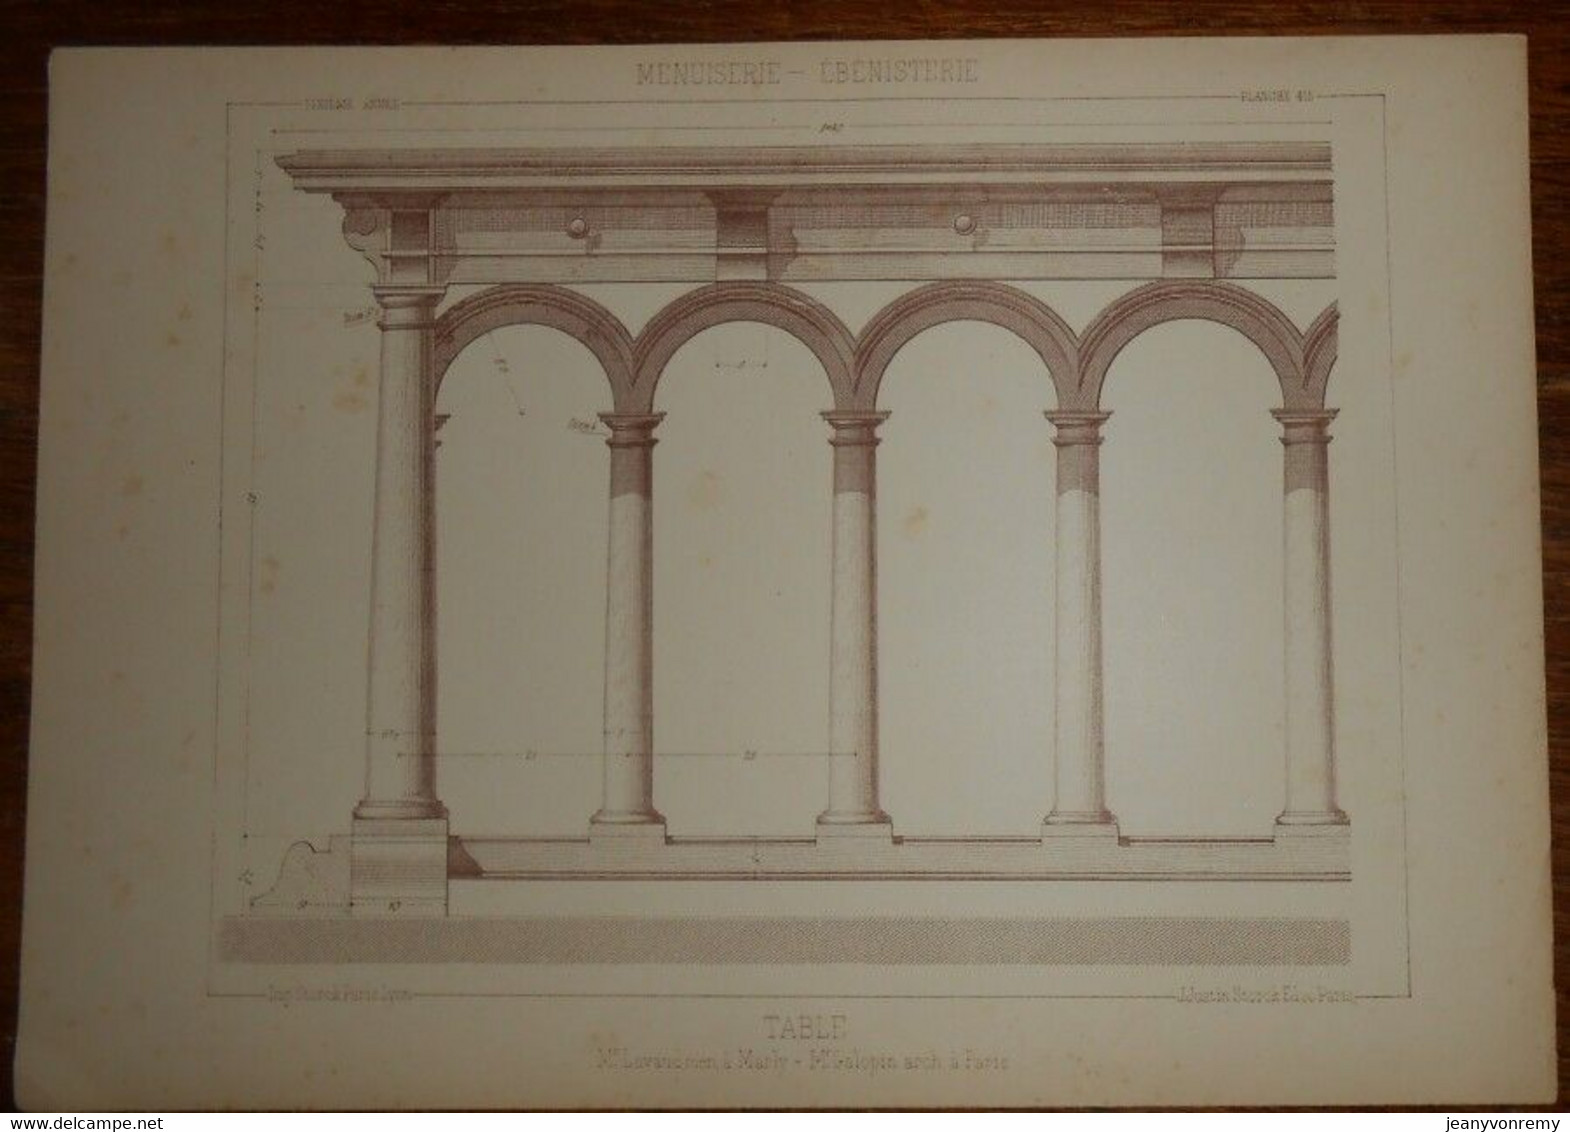 Table. Menuiserie - Ebénisterie. M. Lavaud, Menuisier à Marly. M. Galopin, Architecte à Paris. 1887. - Other Plans